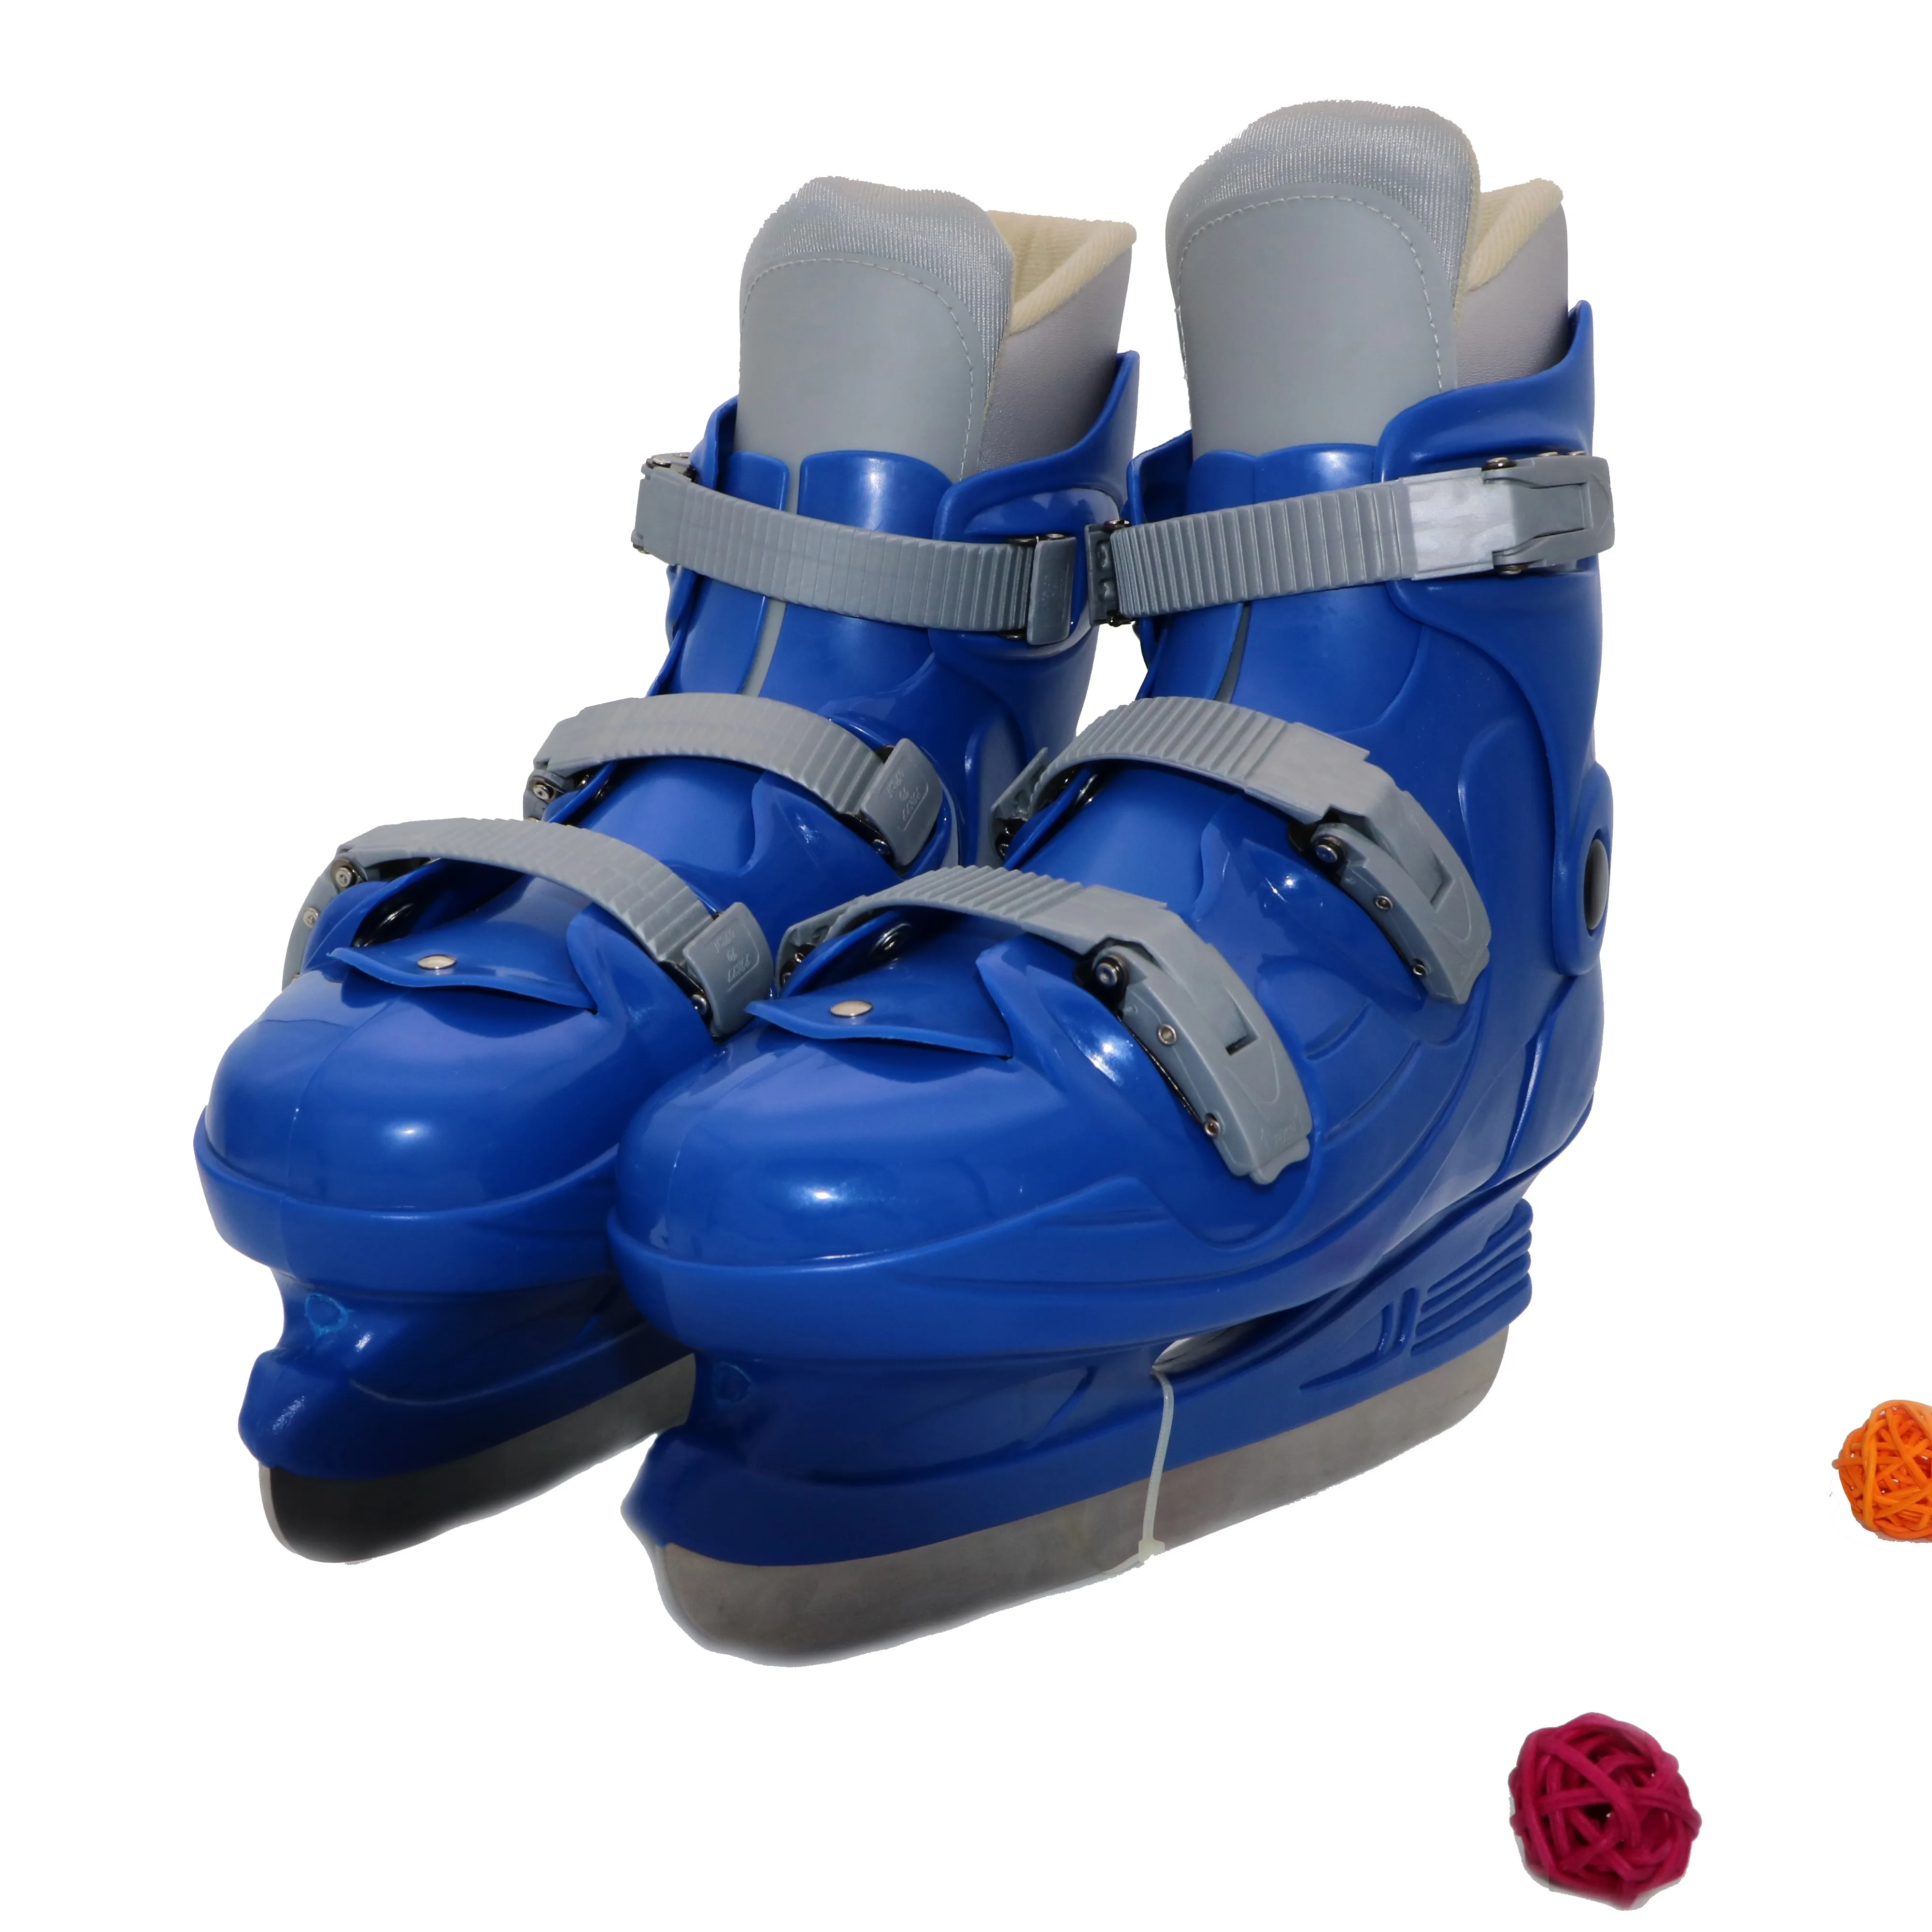  2020 Прямая оптовая продажа от производителя обувь для коньков льда каток подходит взрослых и